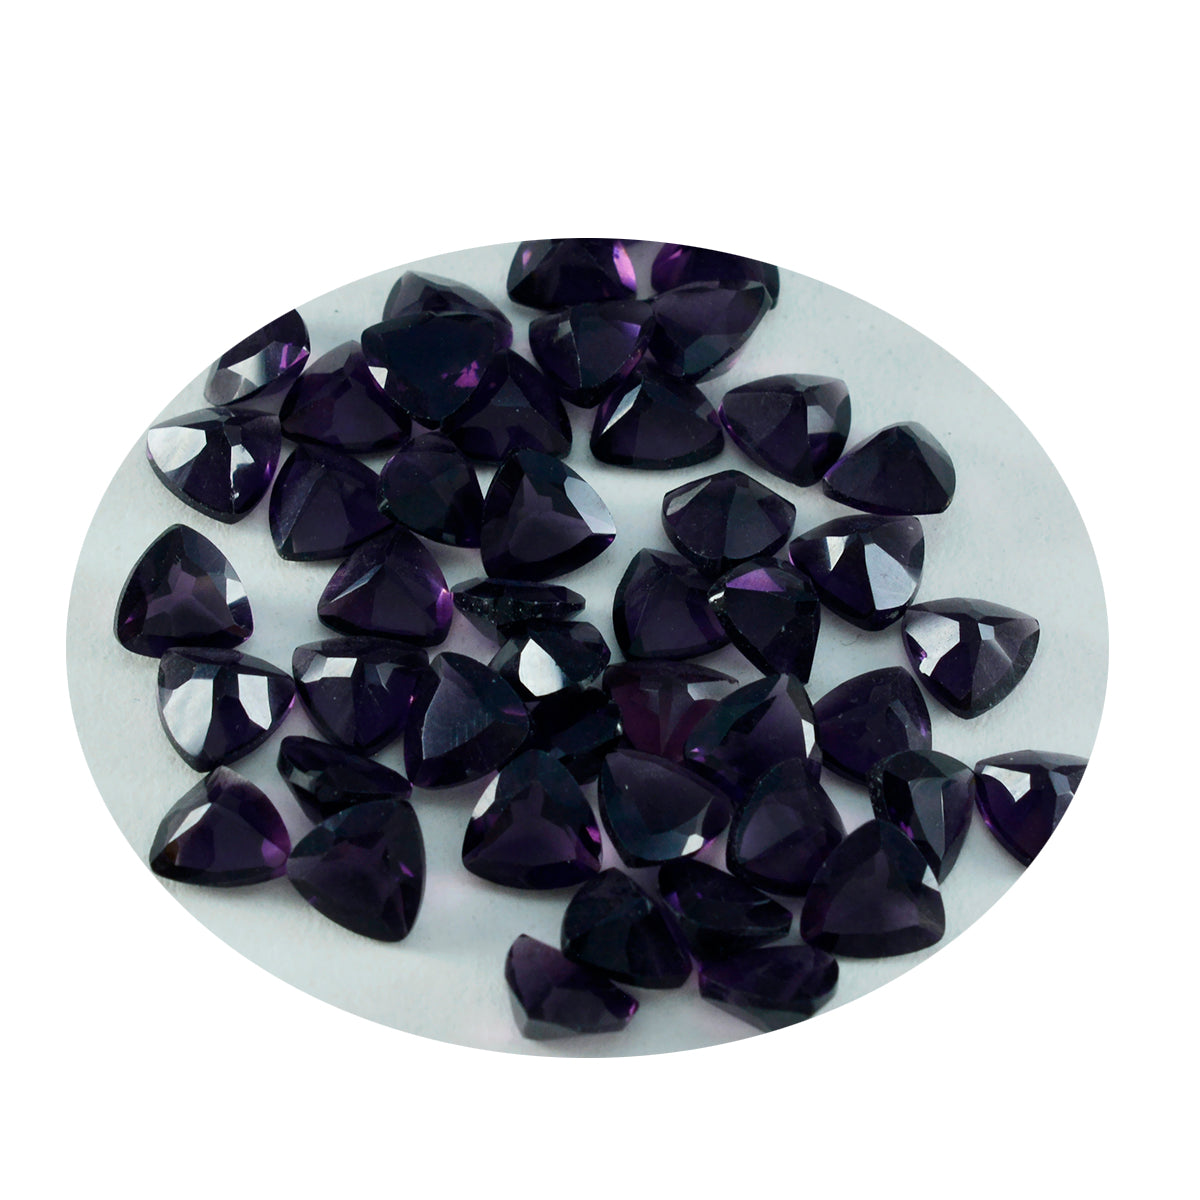 Riyogems 1 pièce améthyste violette cz à facettes 6x6mm forme trillion bonne qualité pierres précieuses en vrac